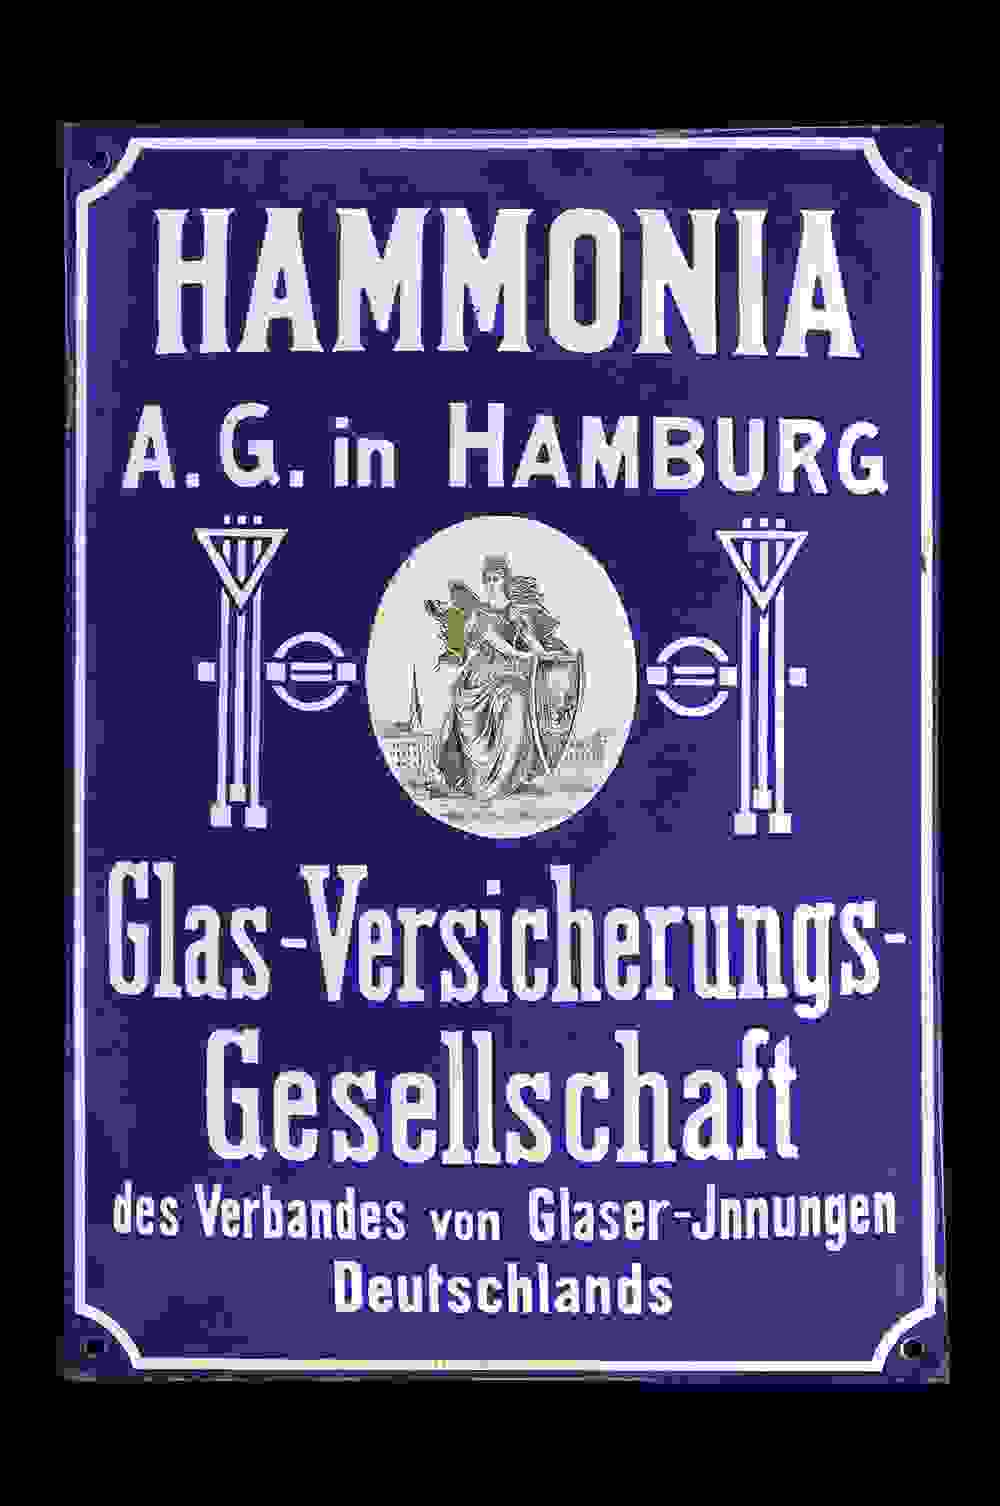 Hammonia Glas-Versicherungs.Gesellschaft 